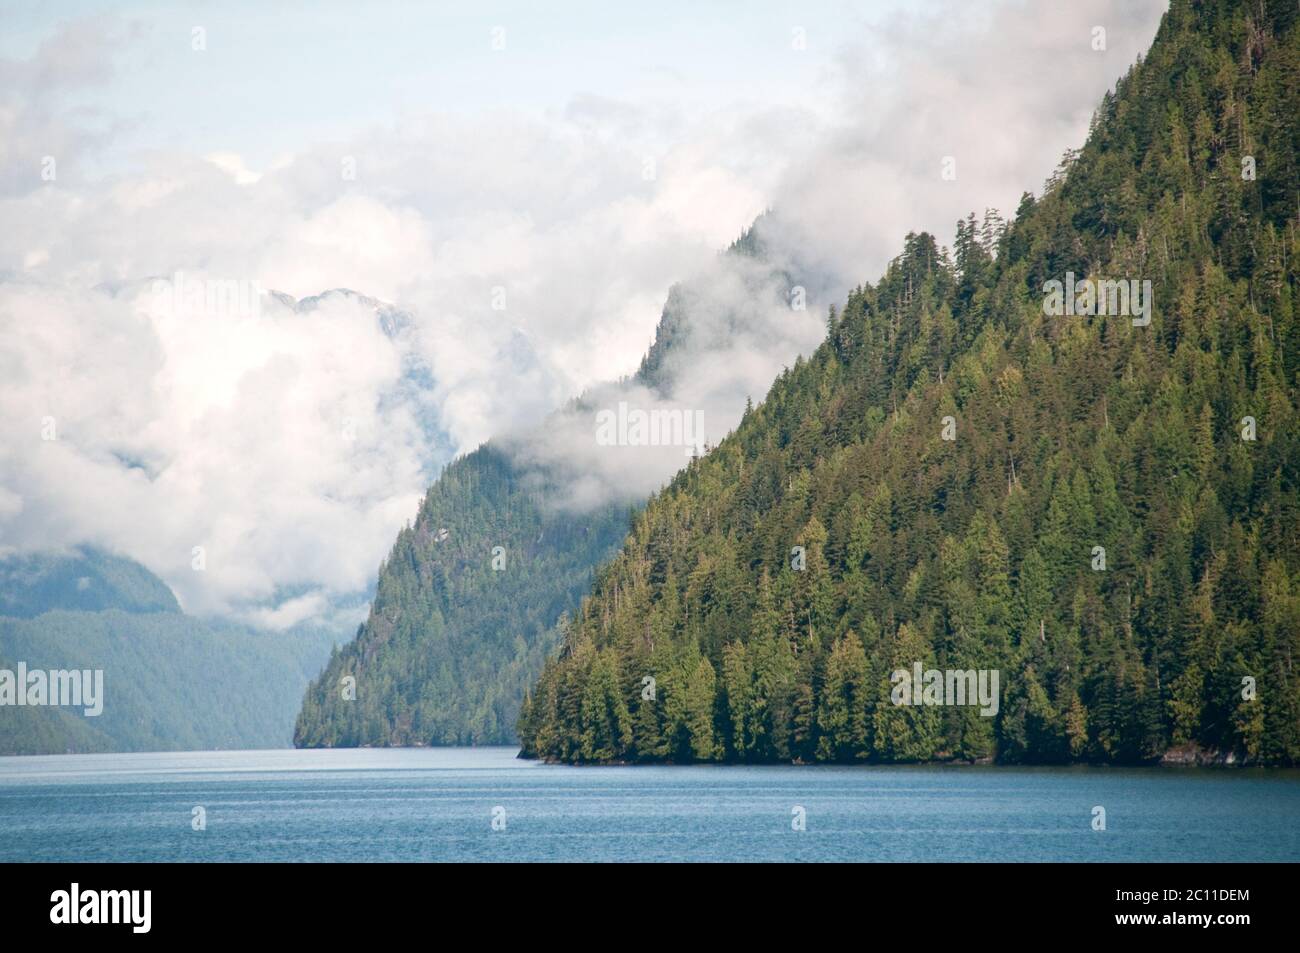 Nuvole misty sopra i fiordi di foresta di conifere di Cascade Inlet nella foresta pluviale di Great Bear sulla costa centrale della Columbia Britannica, Canada. Foto Stock